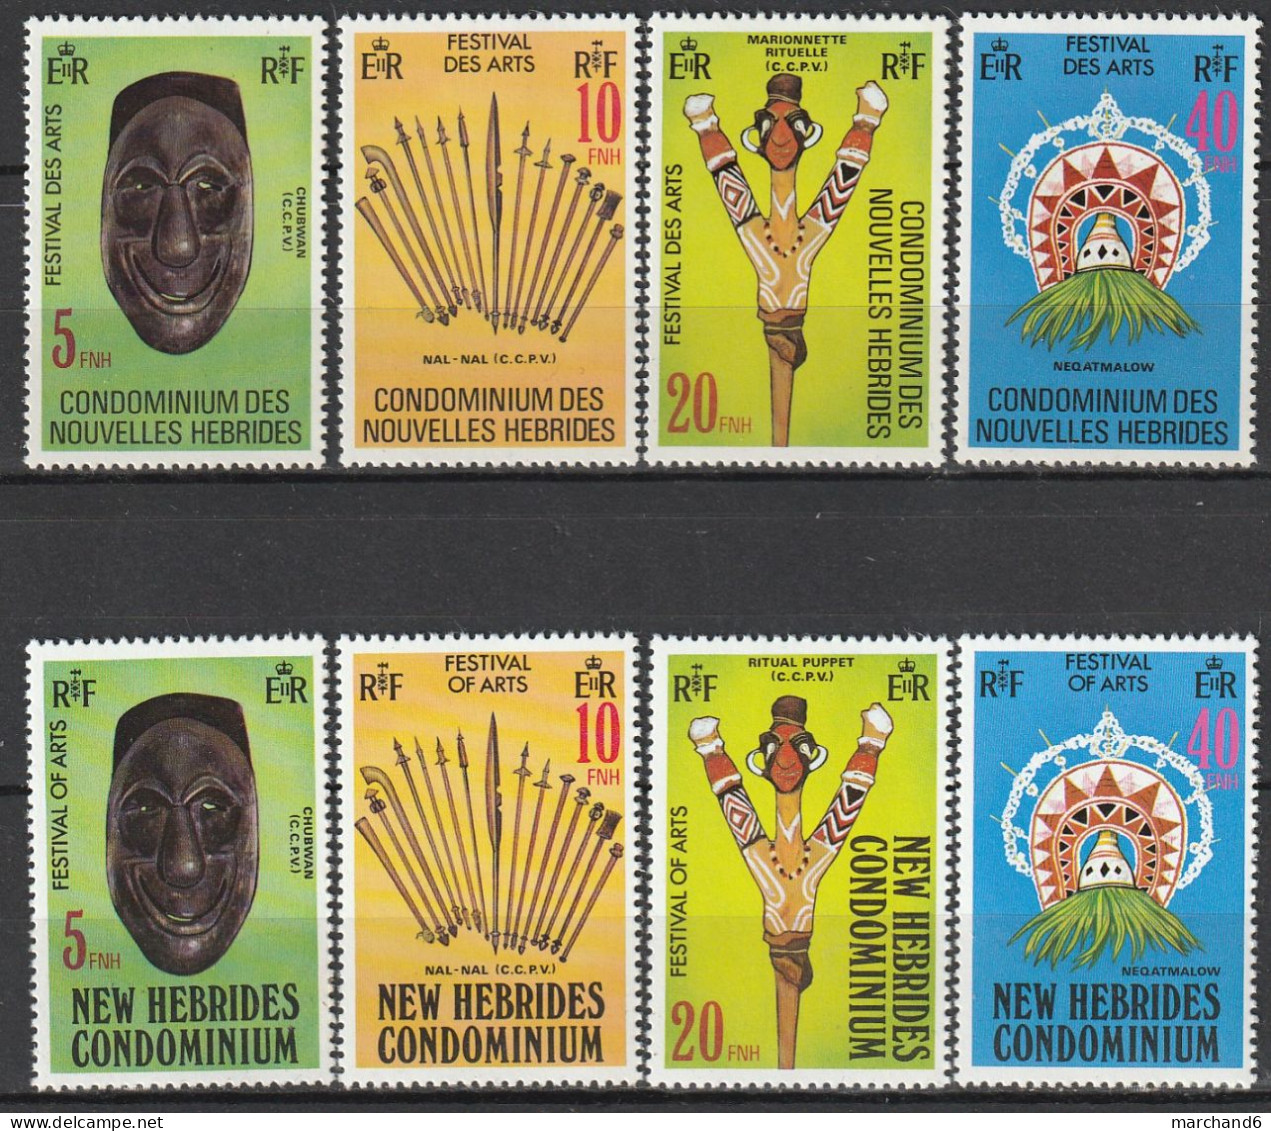 Nouvelles Hébrides Festival Des Arts Du 10 Au 17 Novembre 1979 France Anglaise N°559/566 Neuf** - Unused Stamps